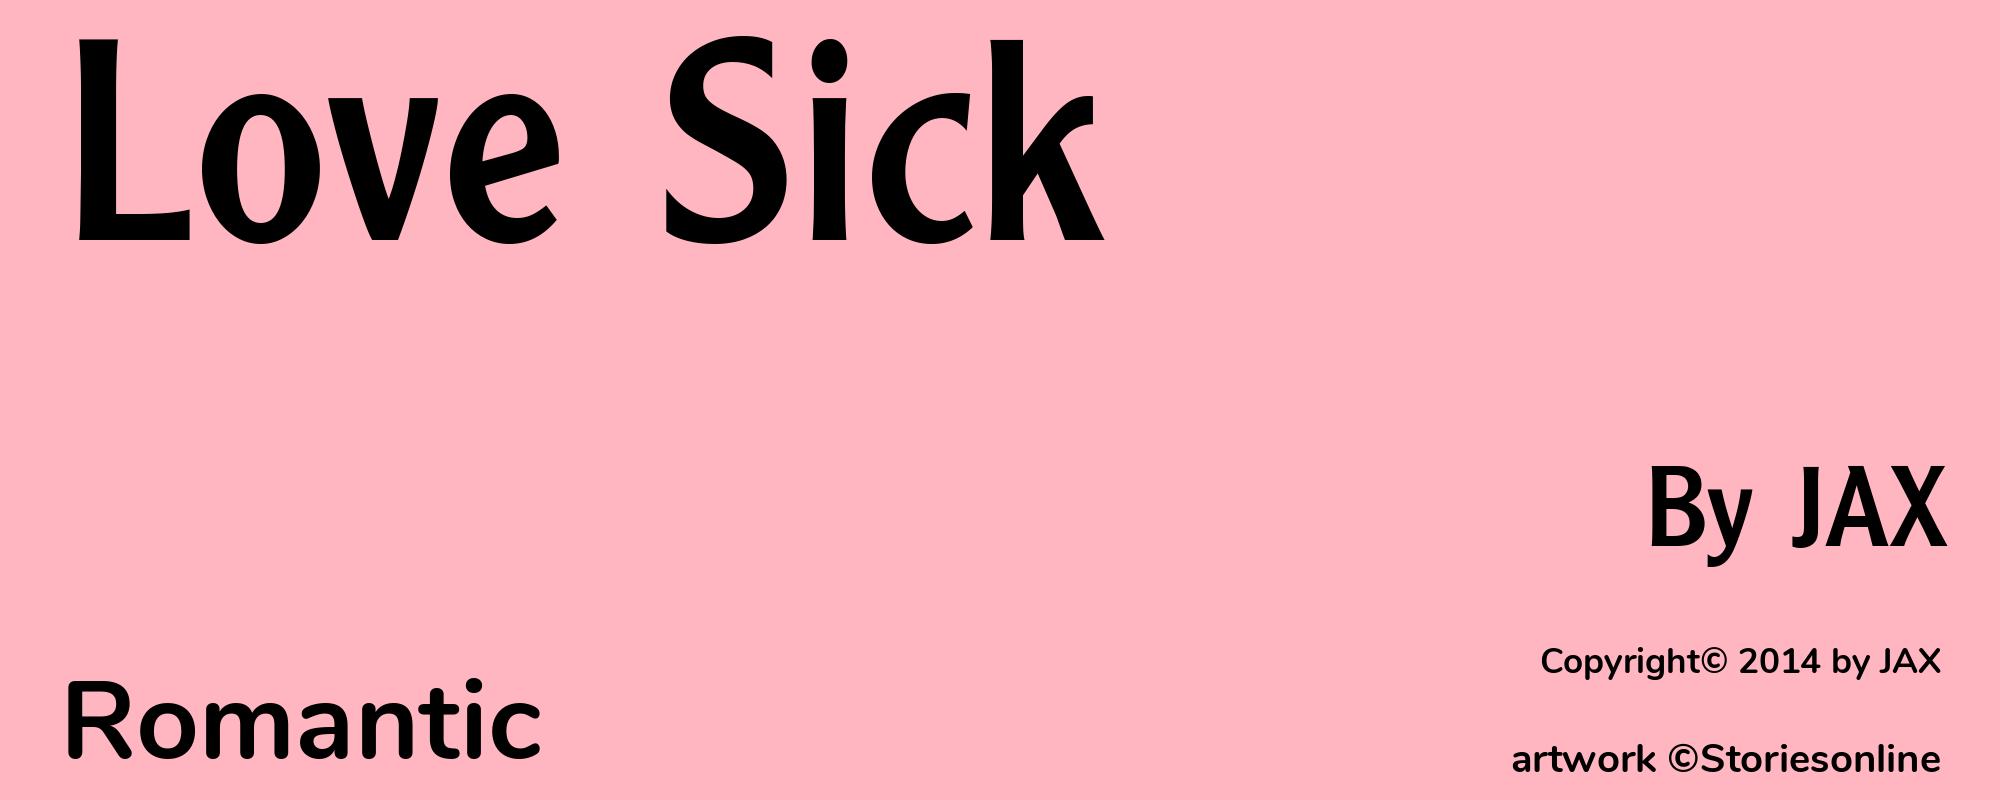 Love Sick - Cover